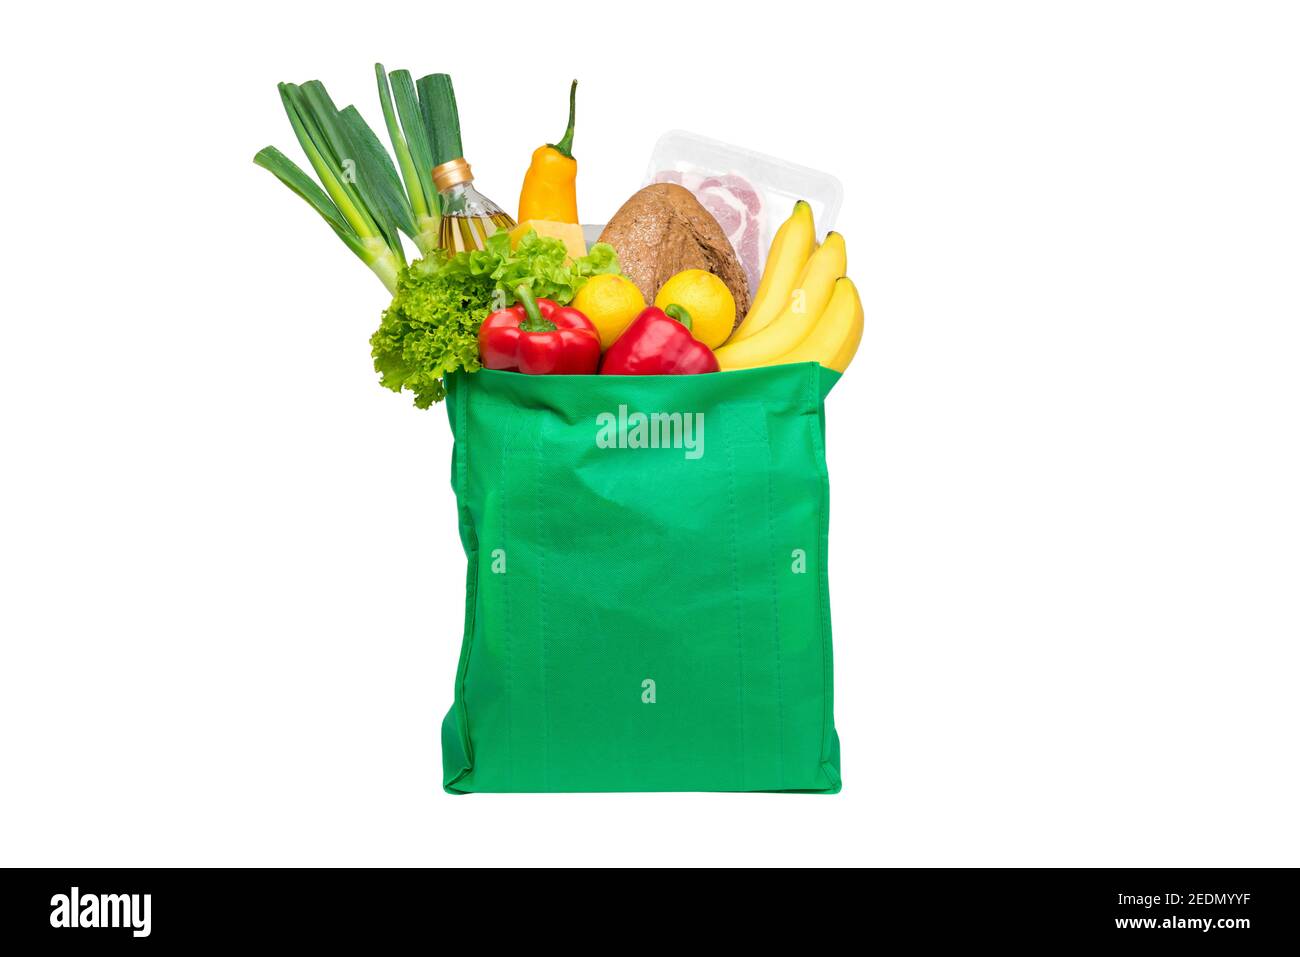 Comida y comestibles en verde eco-amigable bolsa de compras reutilizable, aislado sobre fondo blanco Foto de stock